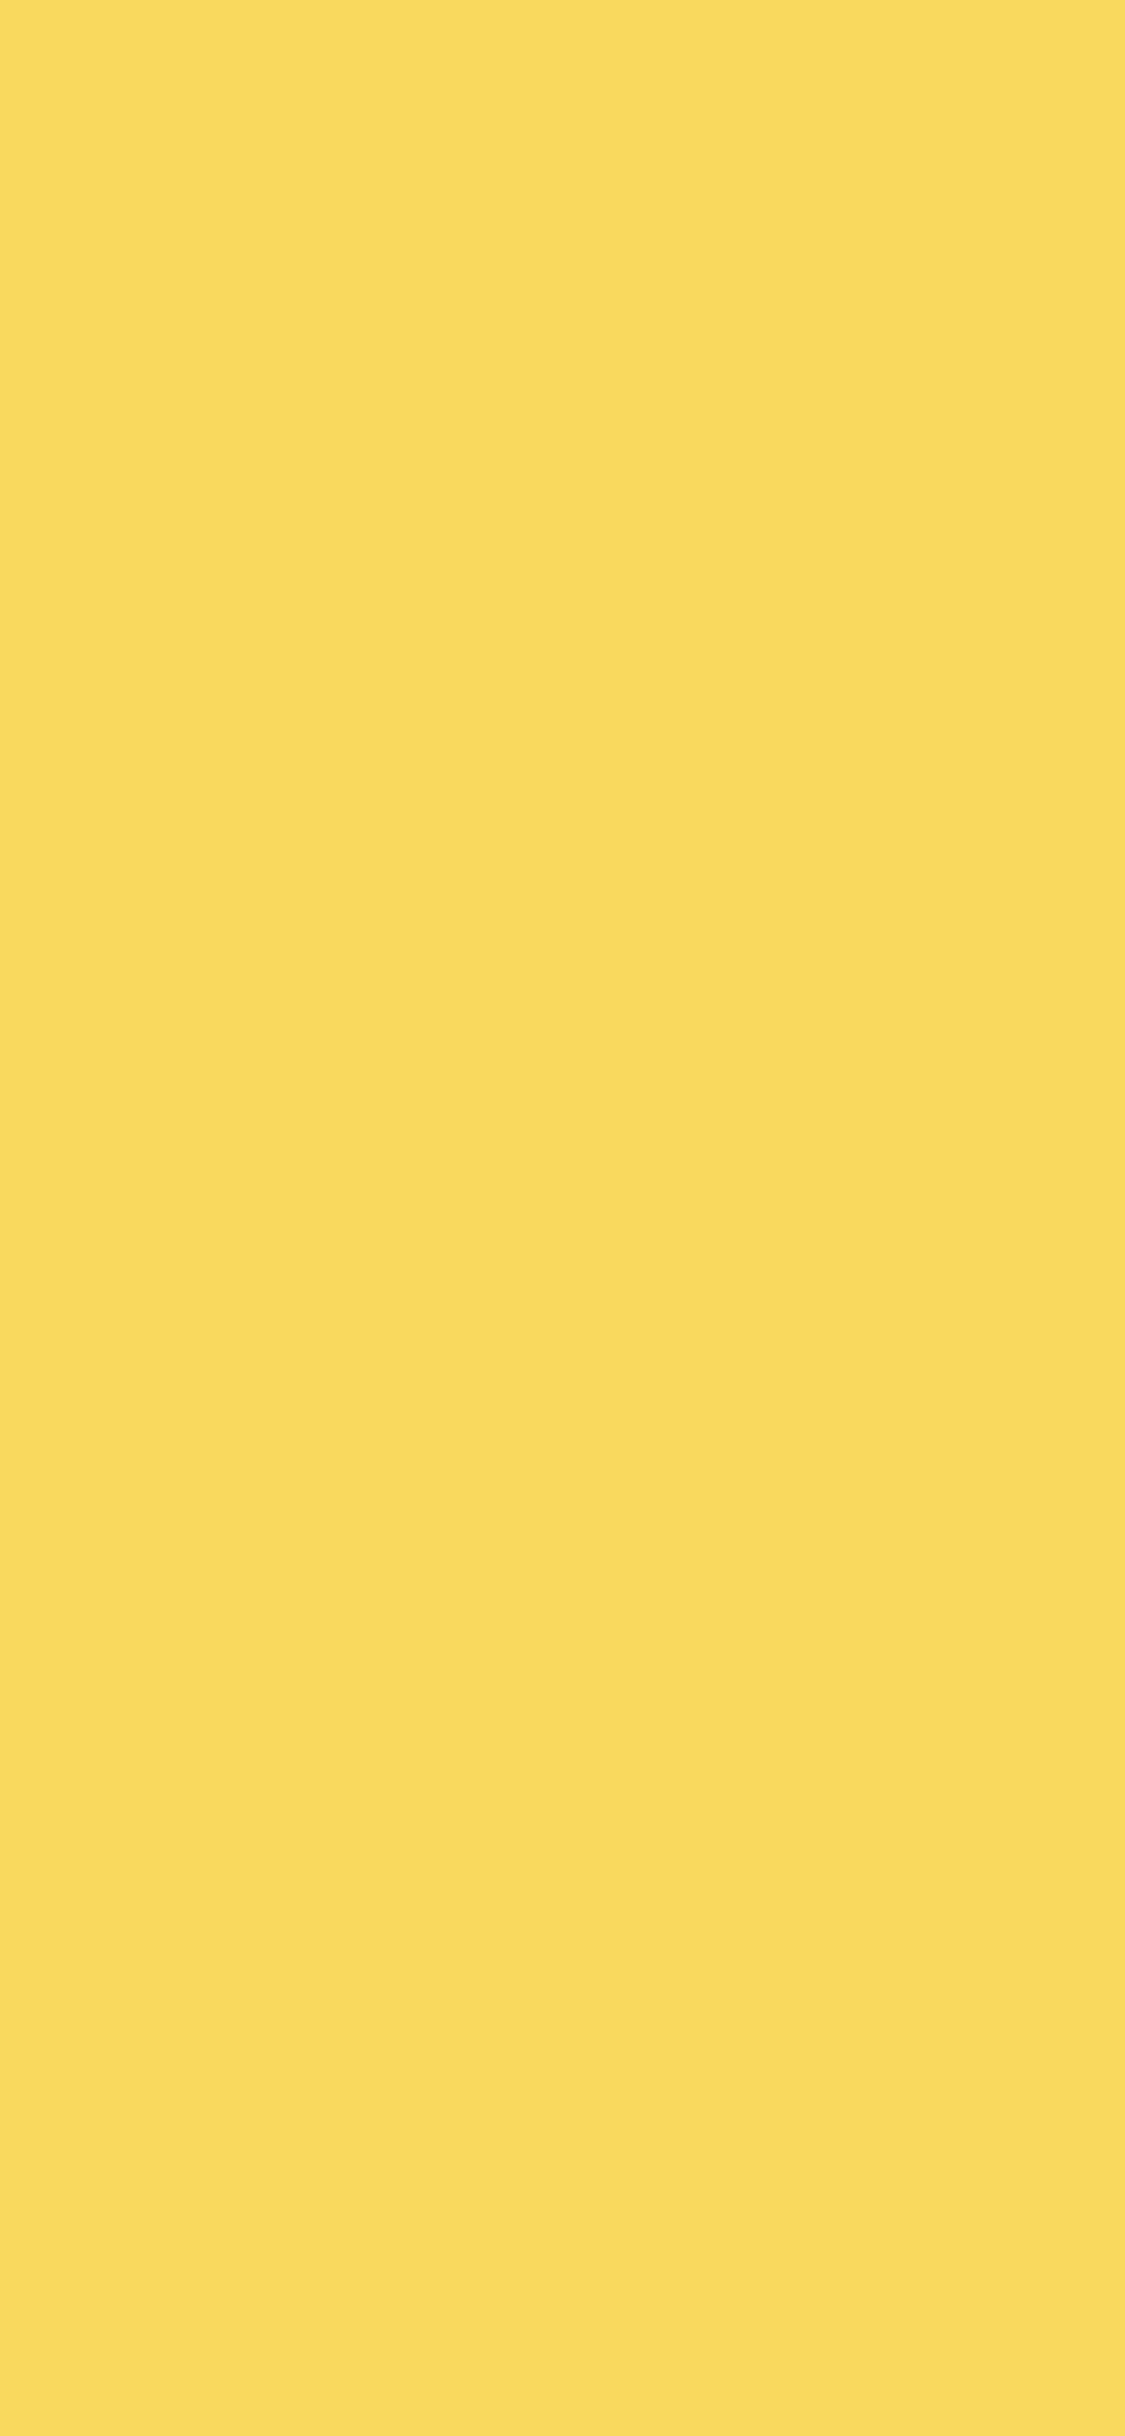 1125x2436 Stil De Grain Yellow Solid Color Background